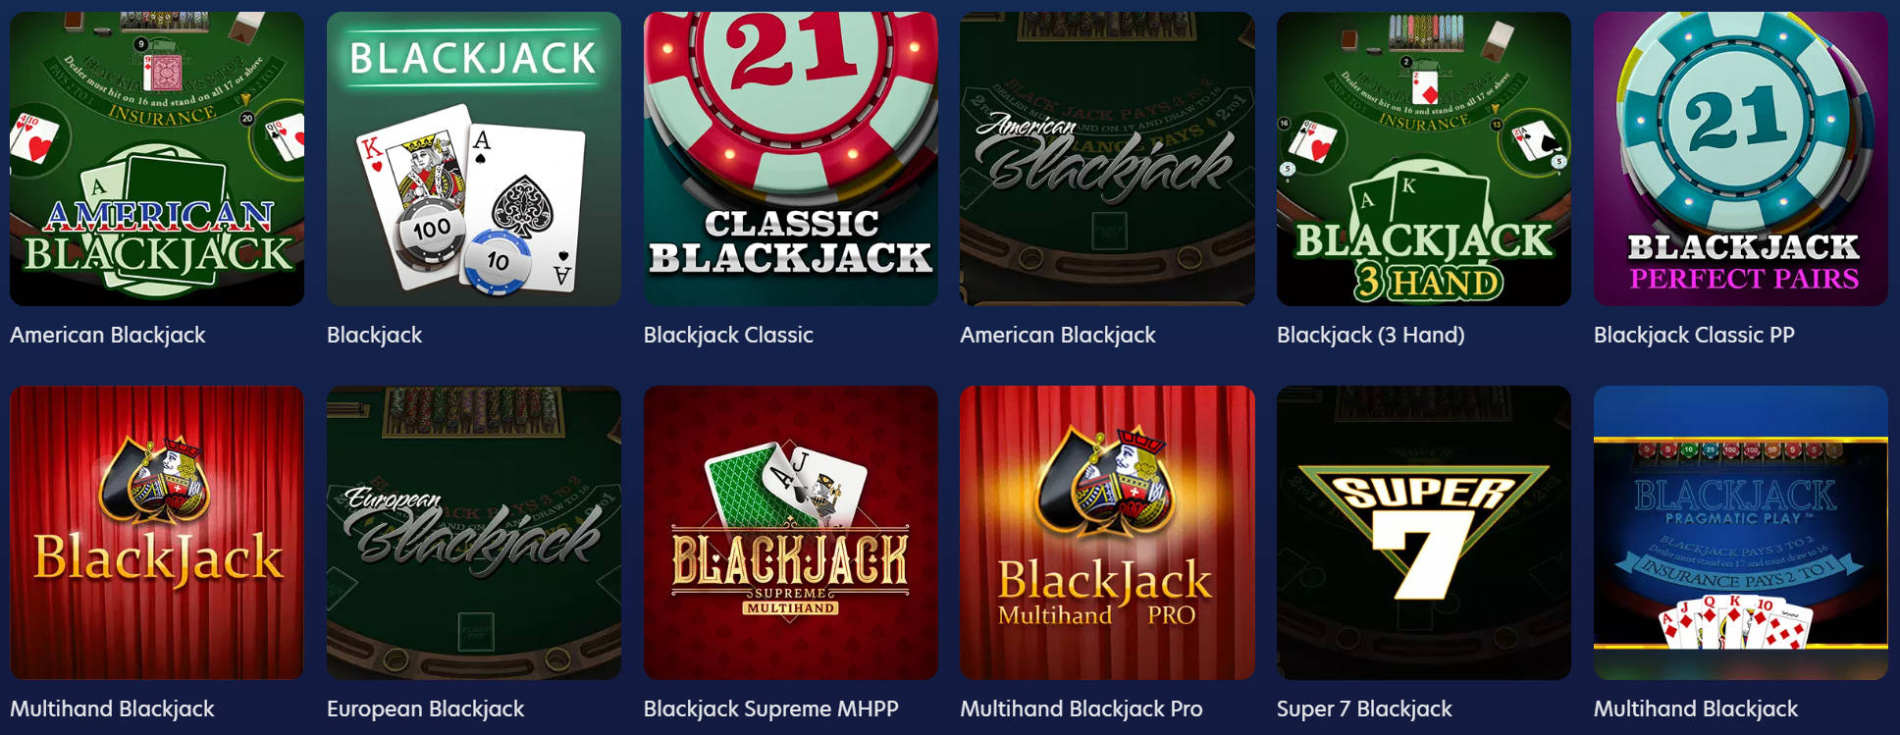 LuckyDreams blackjack table games